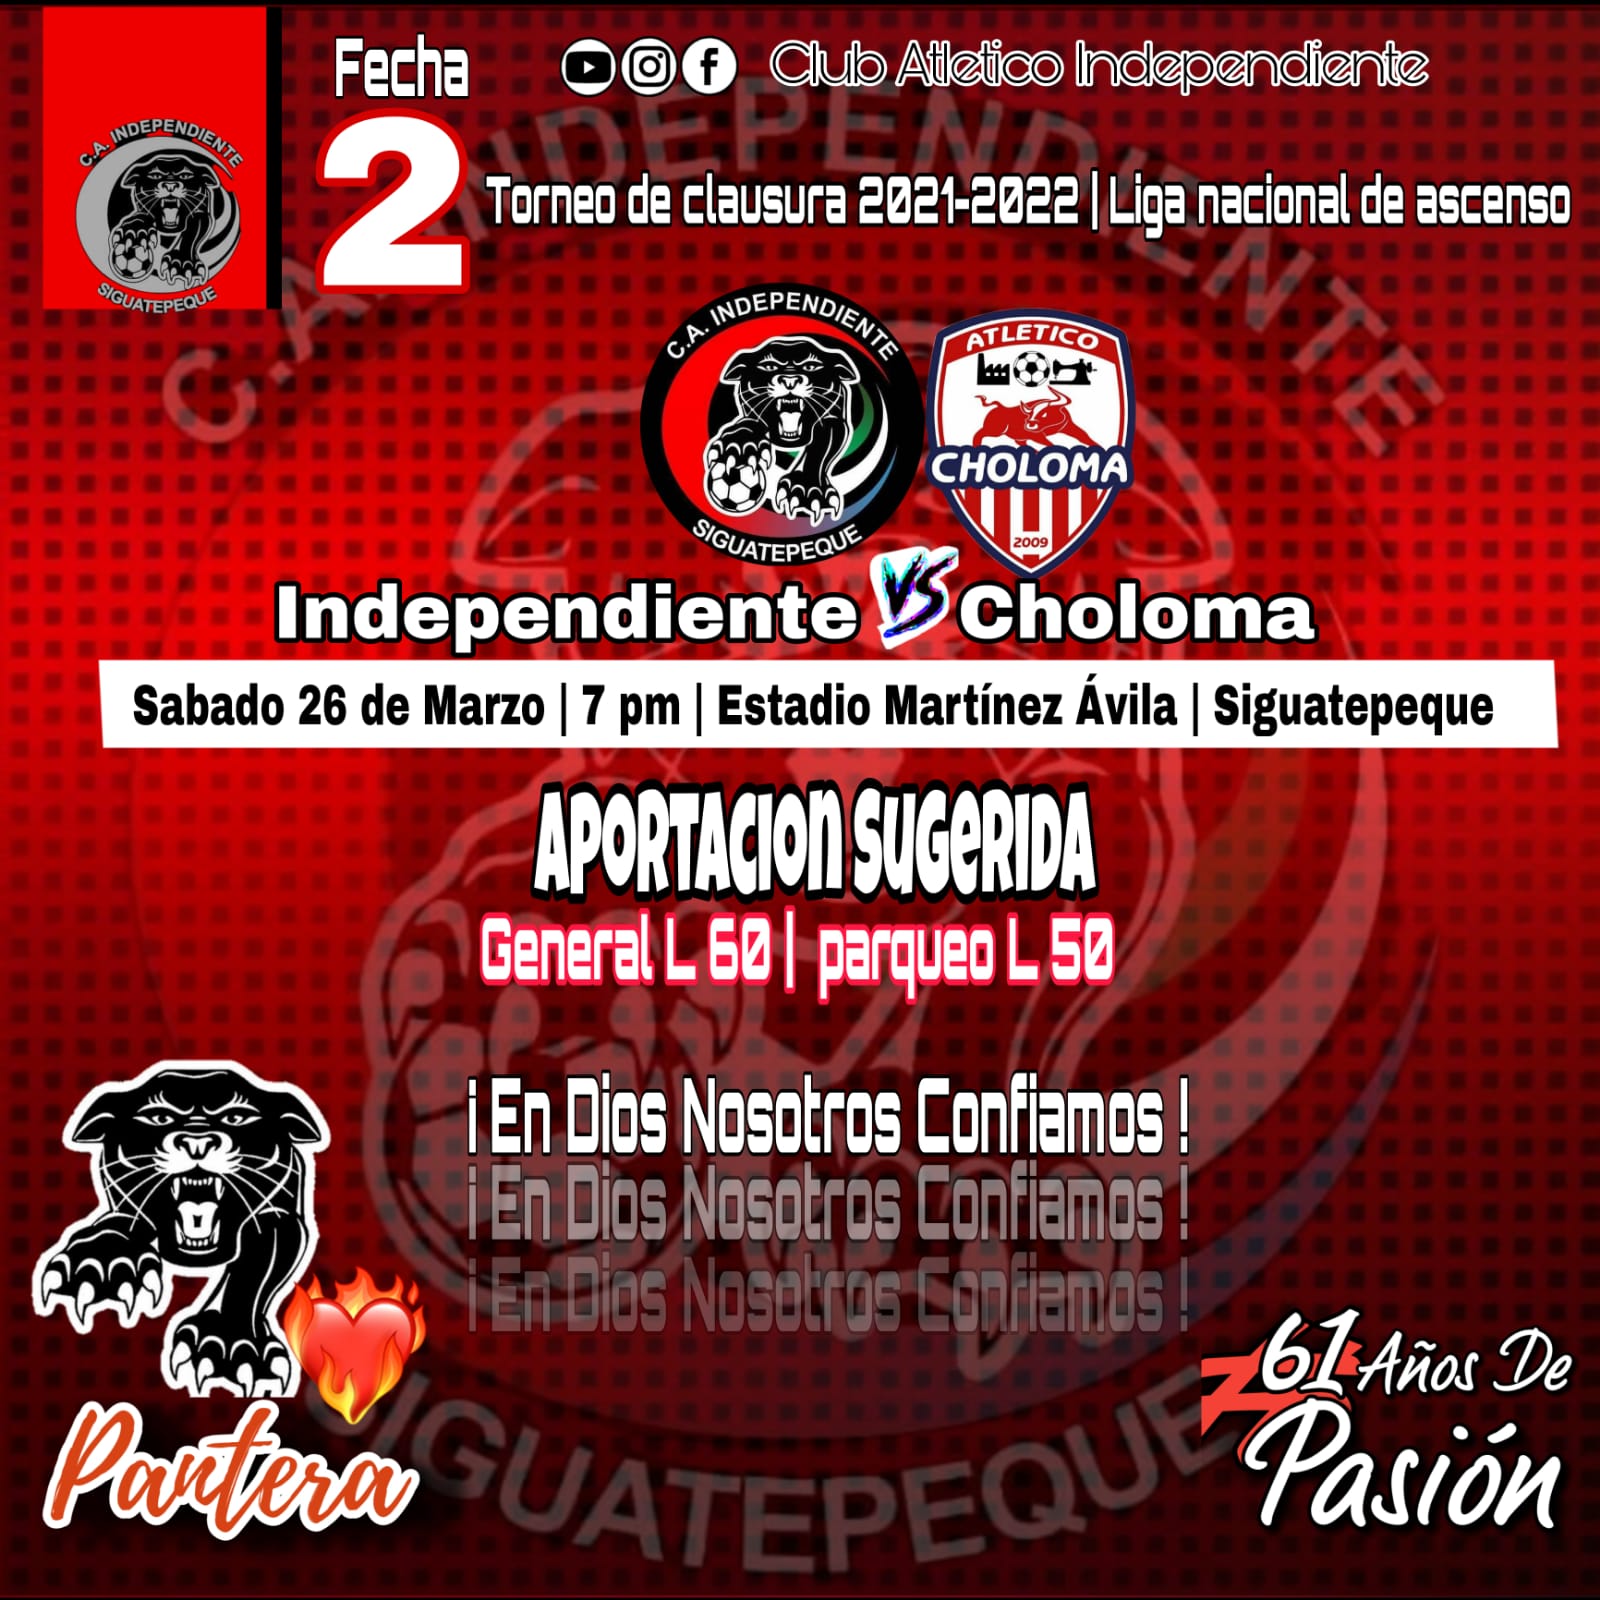 Club Atletico - Club Atletico Independiente Siguatepeque